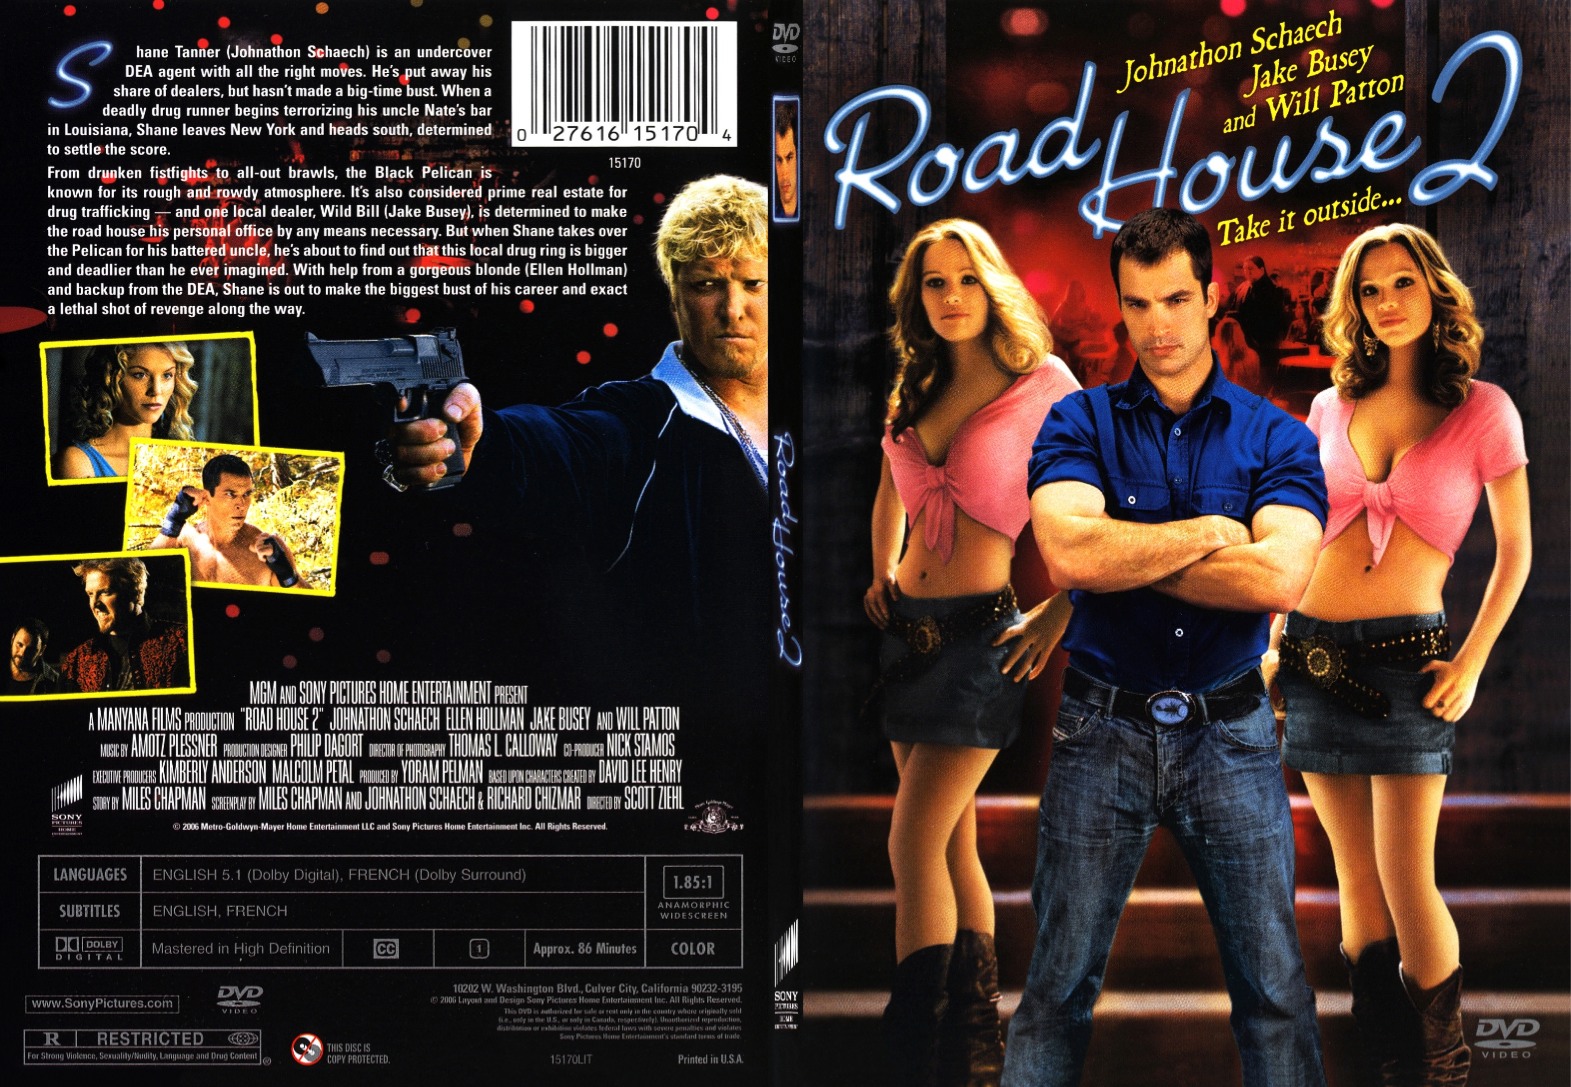 Jaquette DVD de Road House 2 SLIM Cinéma Passion